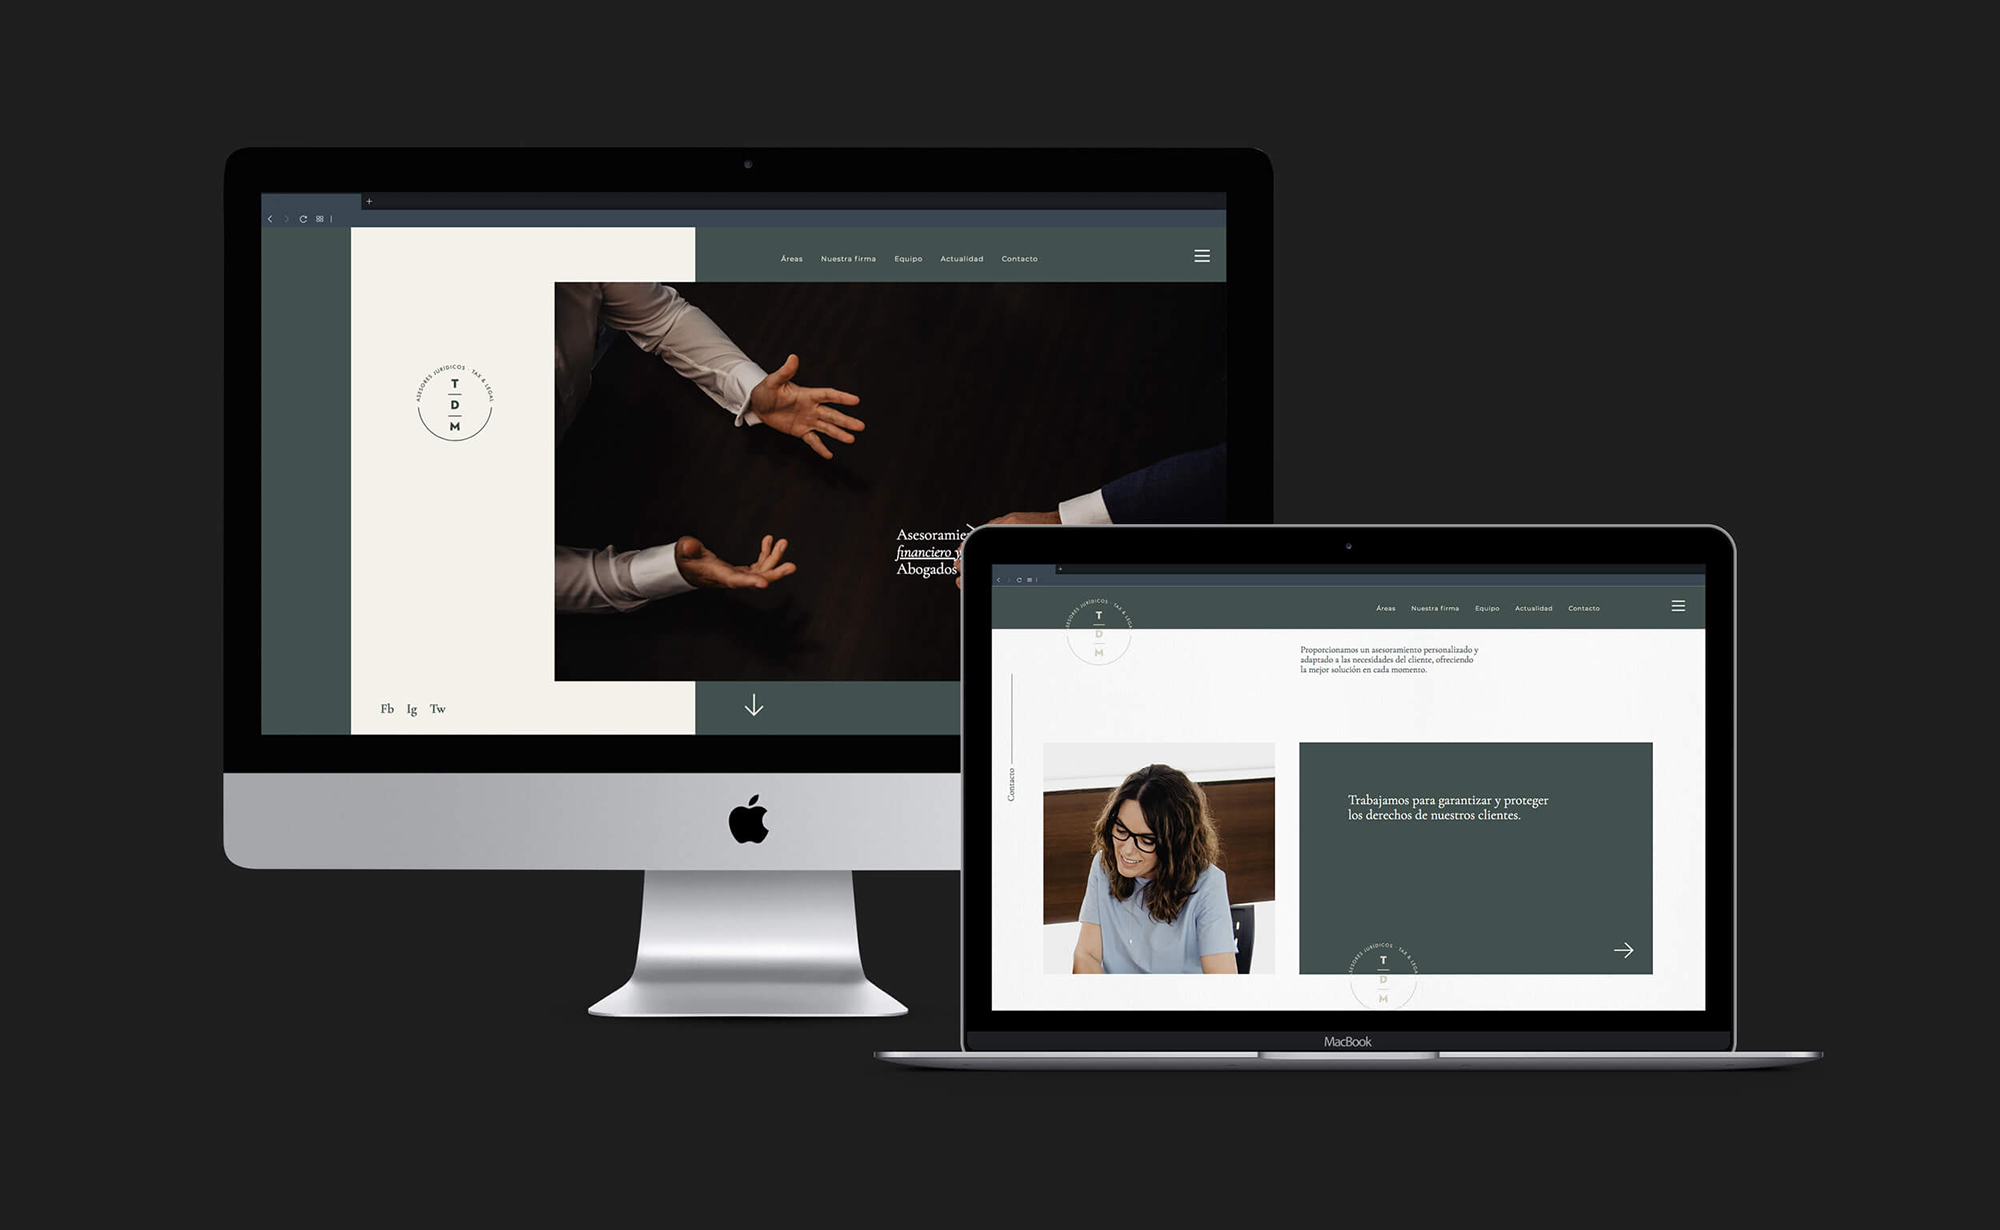 Diseño y desarrollo de website corporativo para TDM Asesores Jurídicos-Tax&Legal. Vista home page sobremesa y laptop.